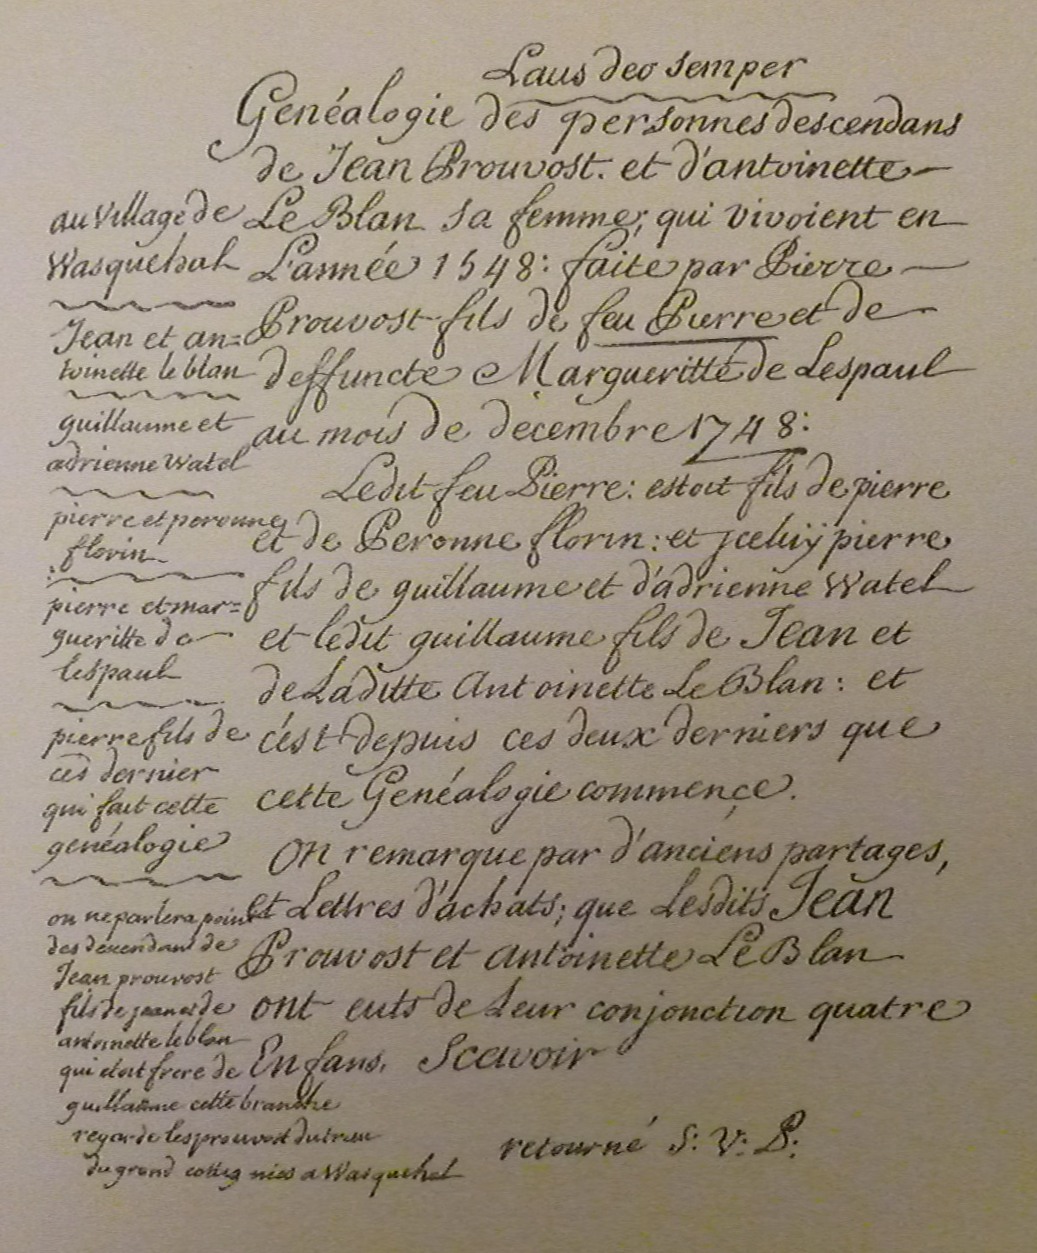 Genealogie-Pierre-Prouvost-Laus-Deo-Semper-1748